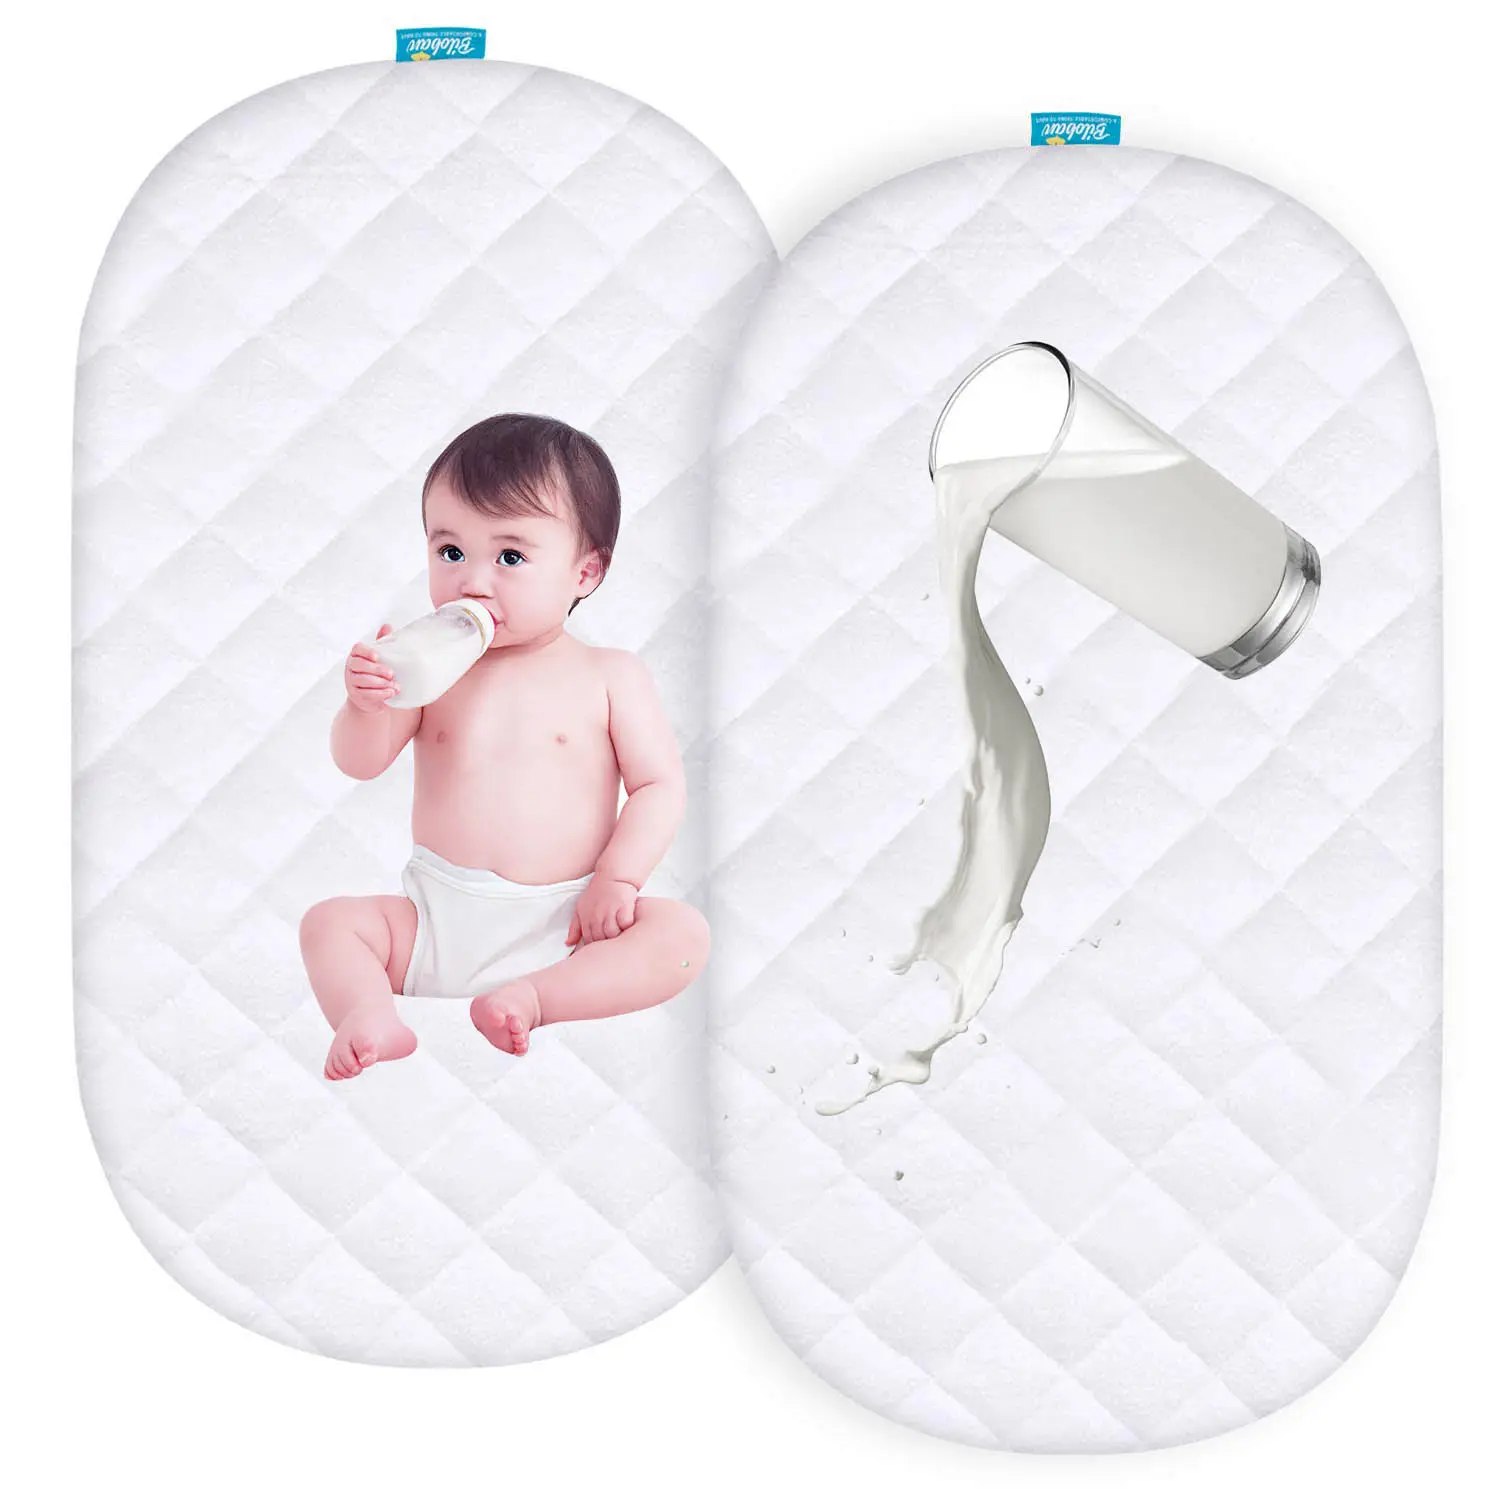 غطاء مرتبة مضاد للمياه 100٪ سرير من قماش الخيزران يسمح بالتهوية ولا يسبب ضوضاءً للطفل 30 أبيض منسوج بسيط مايكروفايبر 1-3 أيام